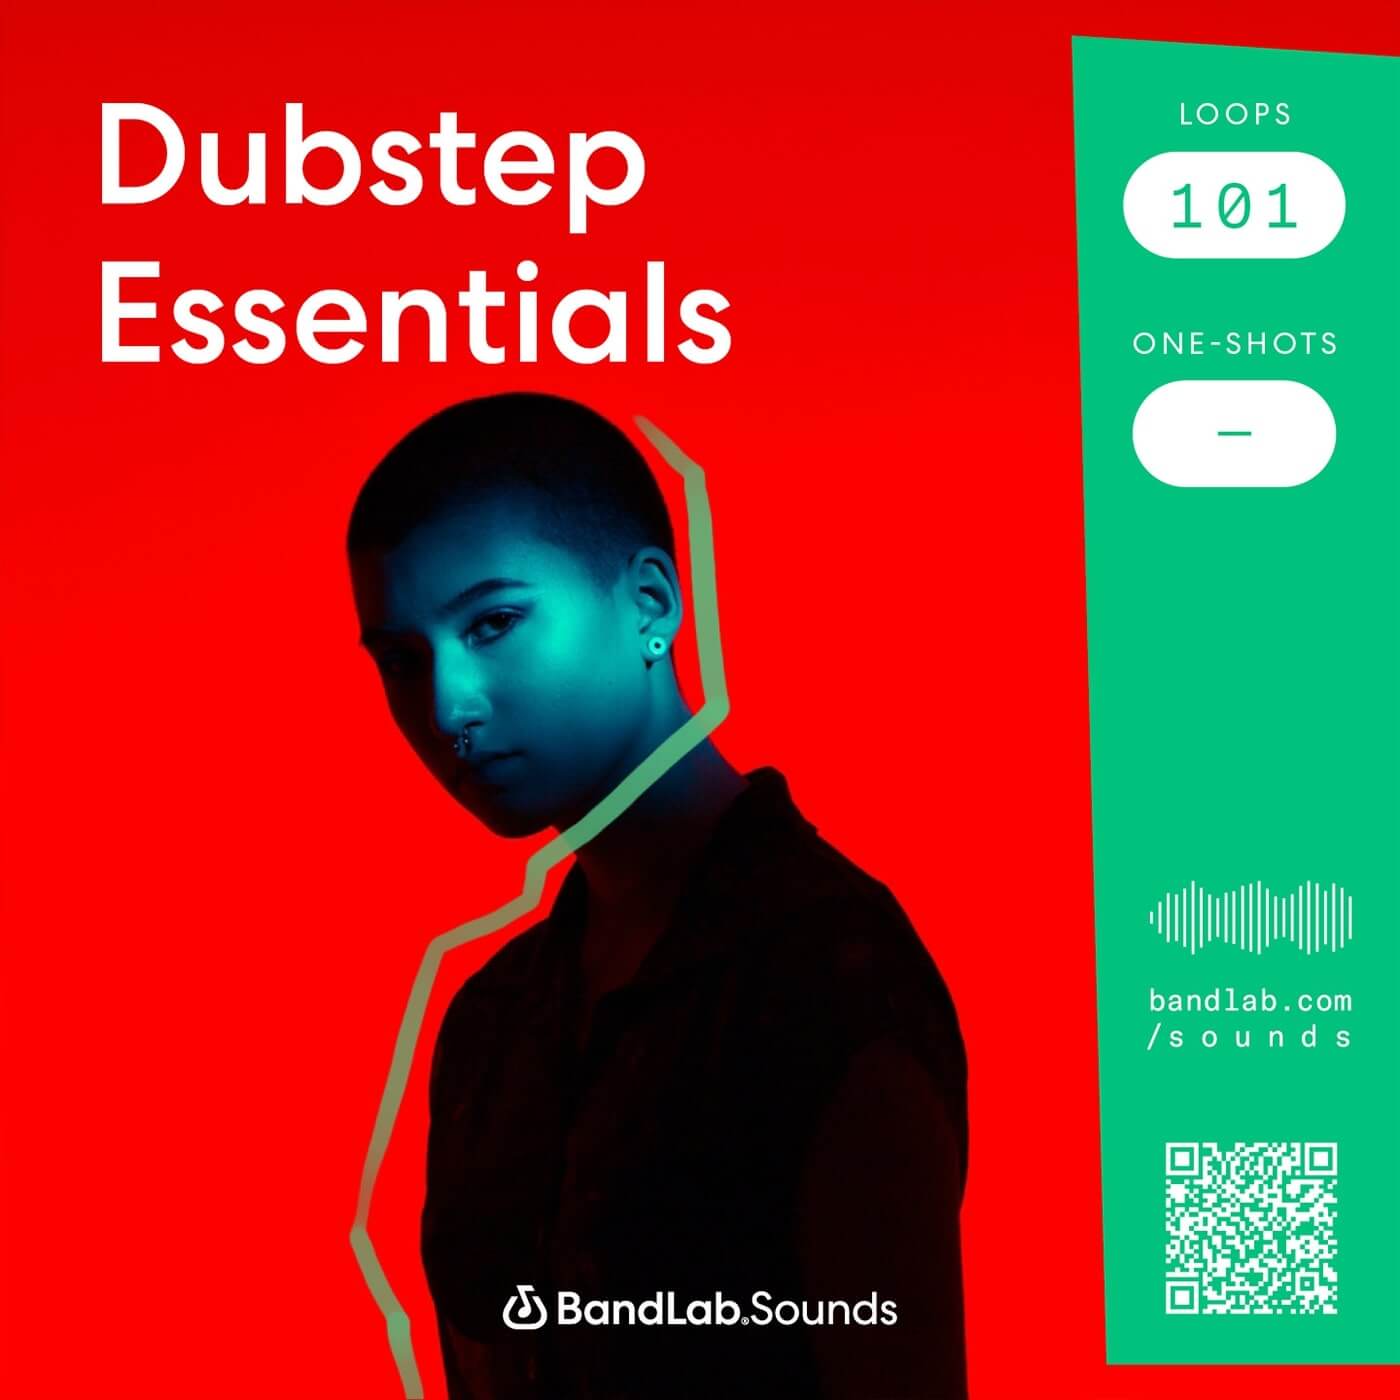 BandLab Sounds Dubstep Essentials sample pack artwork